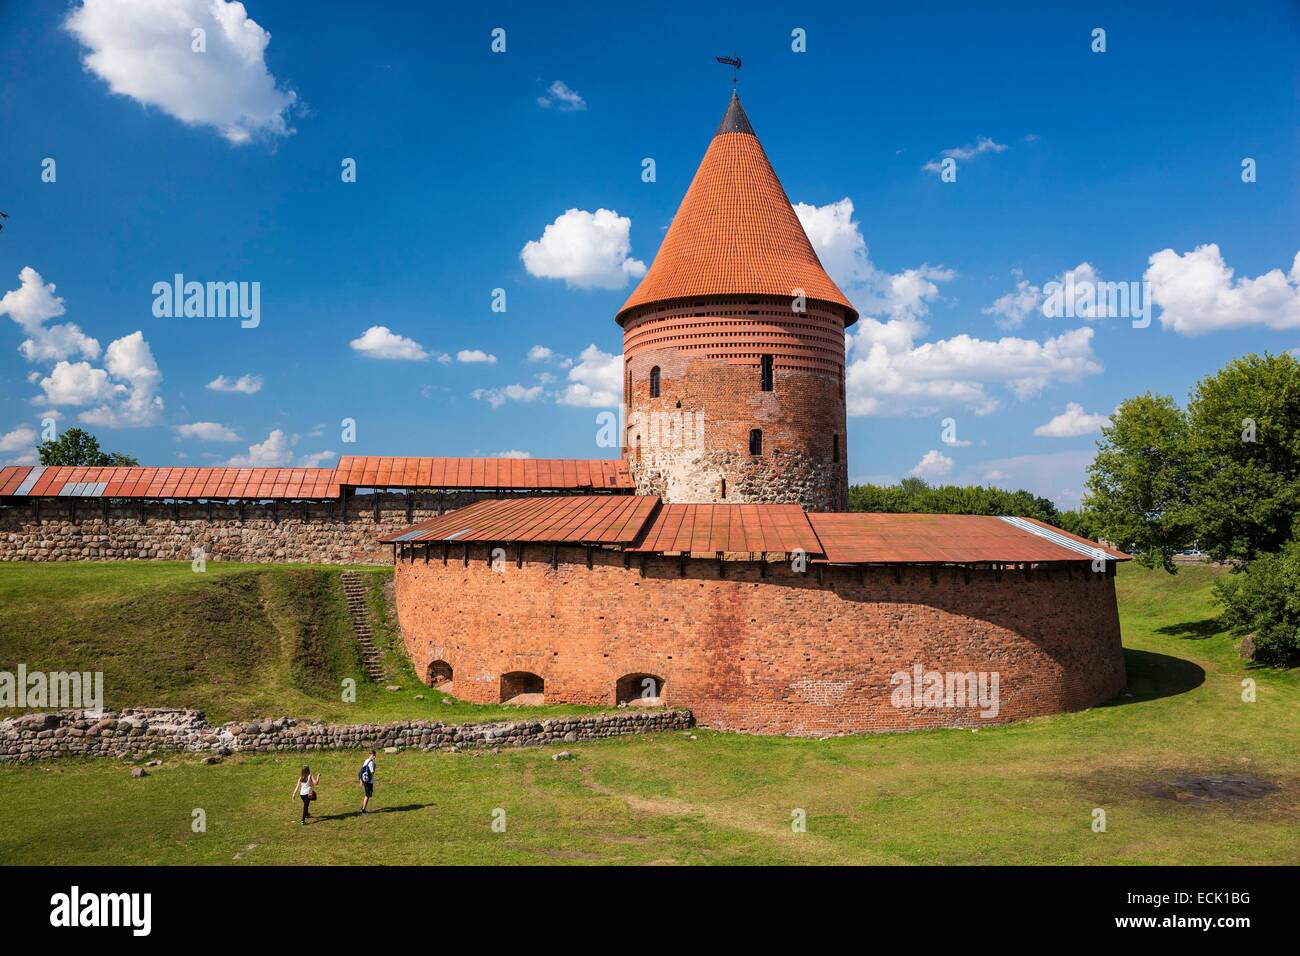 La Lituanie (pays baltes), comté de Kaunas, Kaunas, Klaipeda château du xiiie siècle Banque D'Images